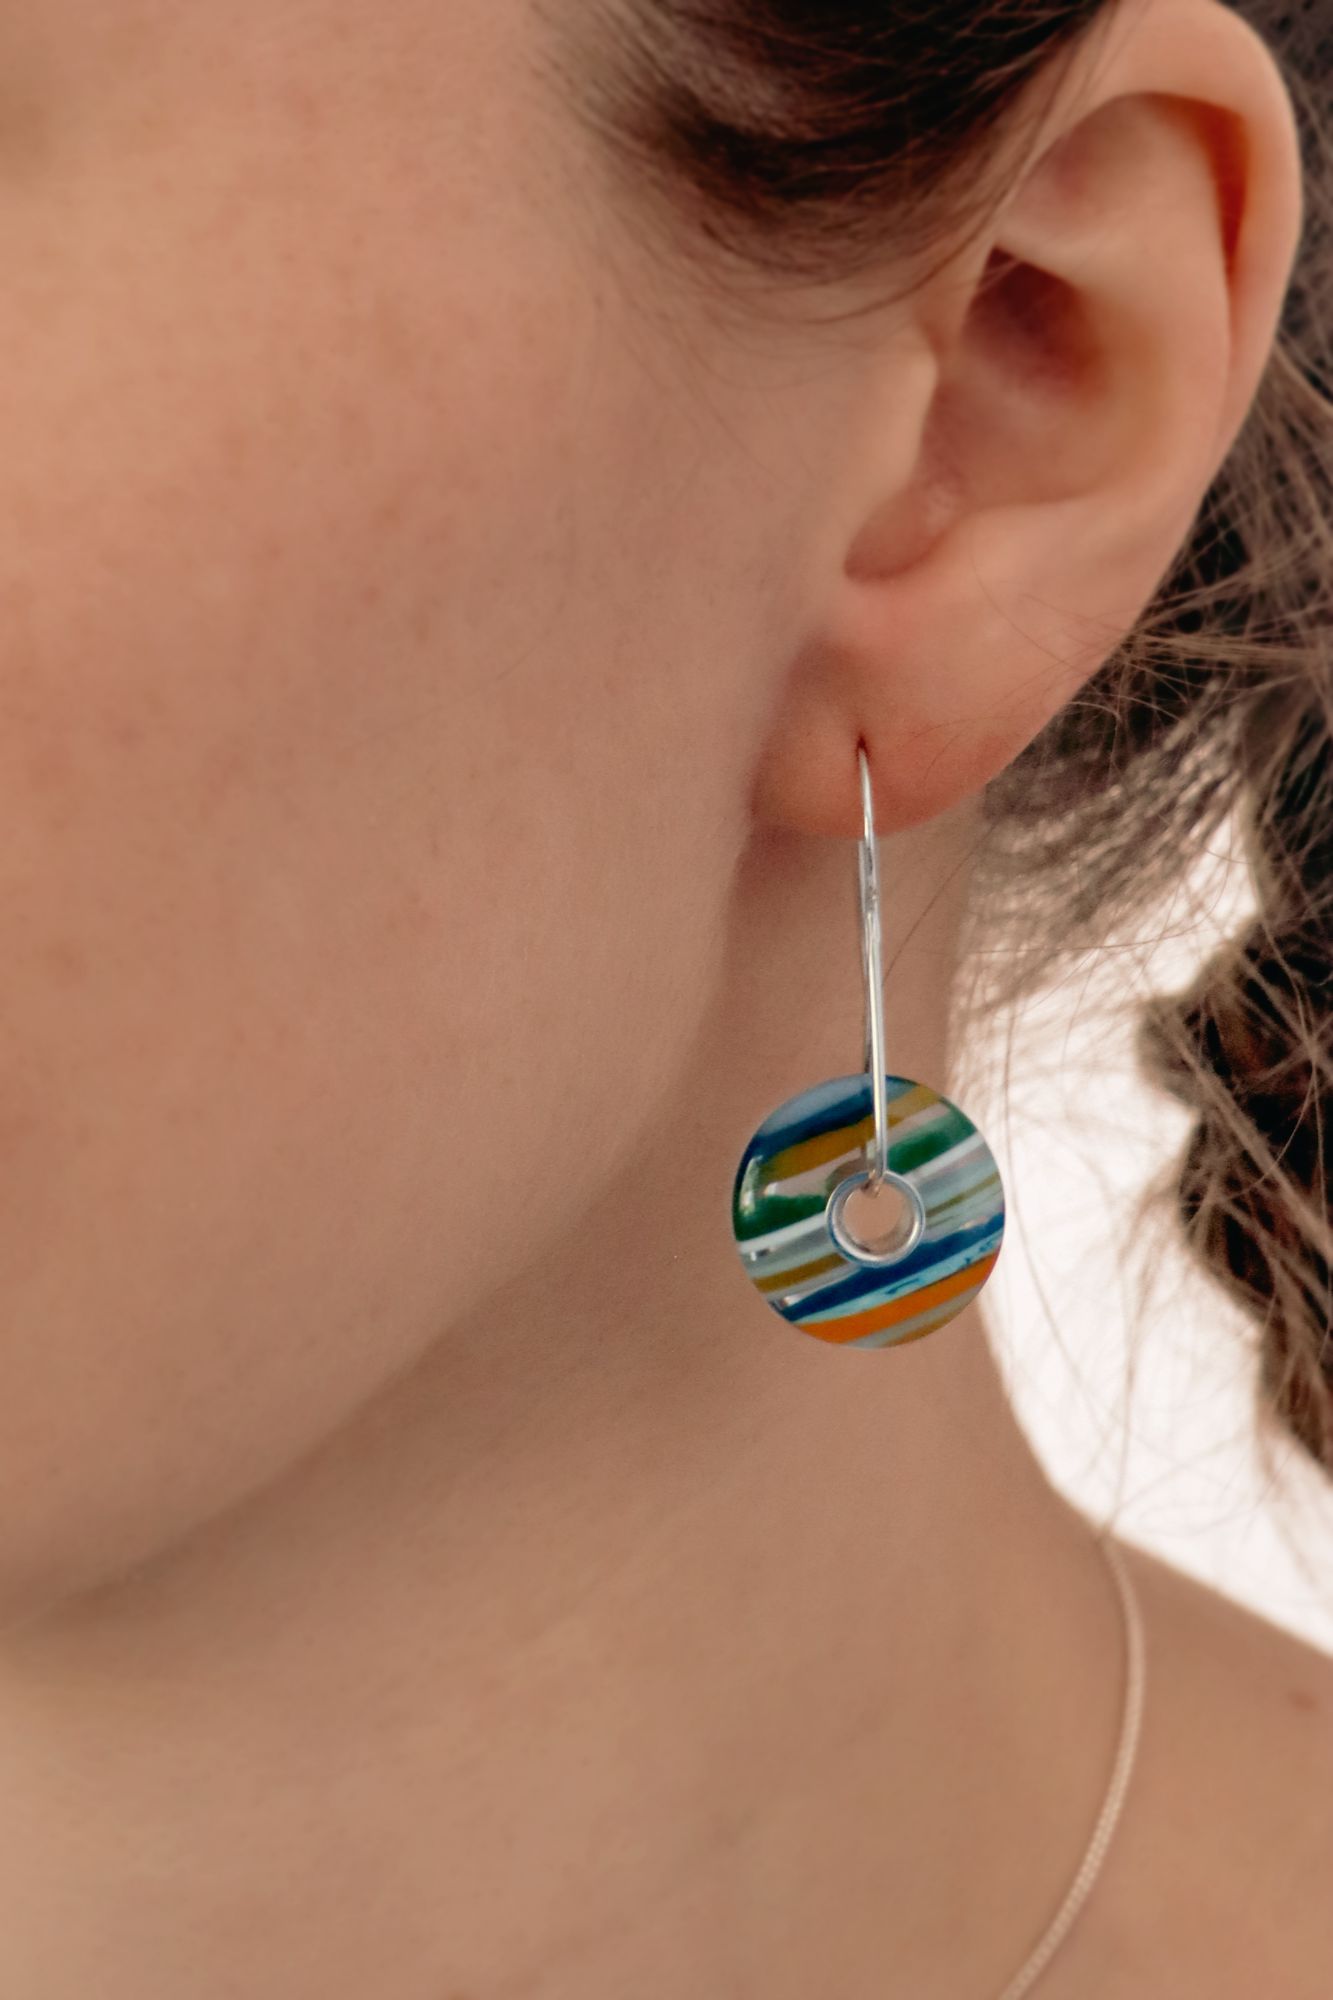 Women wearing a round striped earring